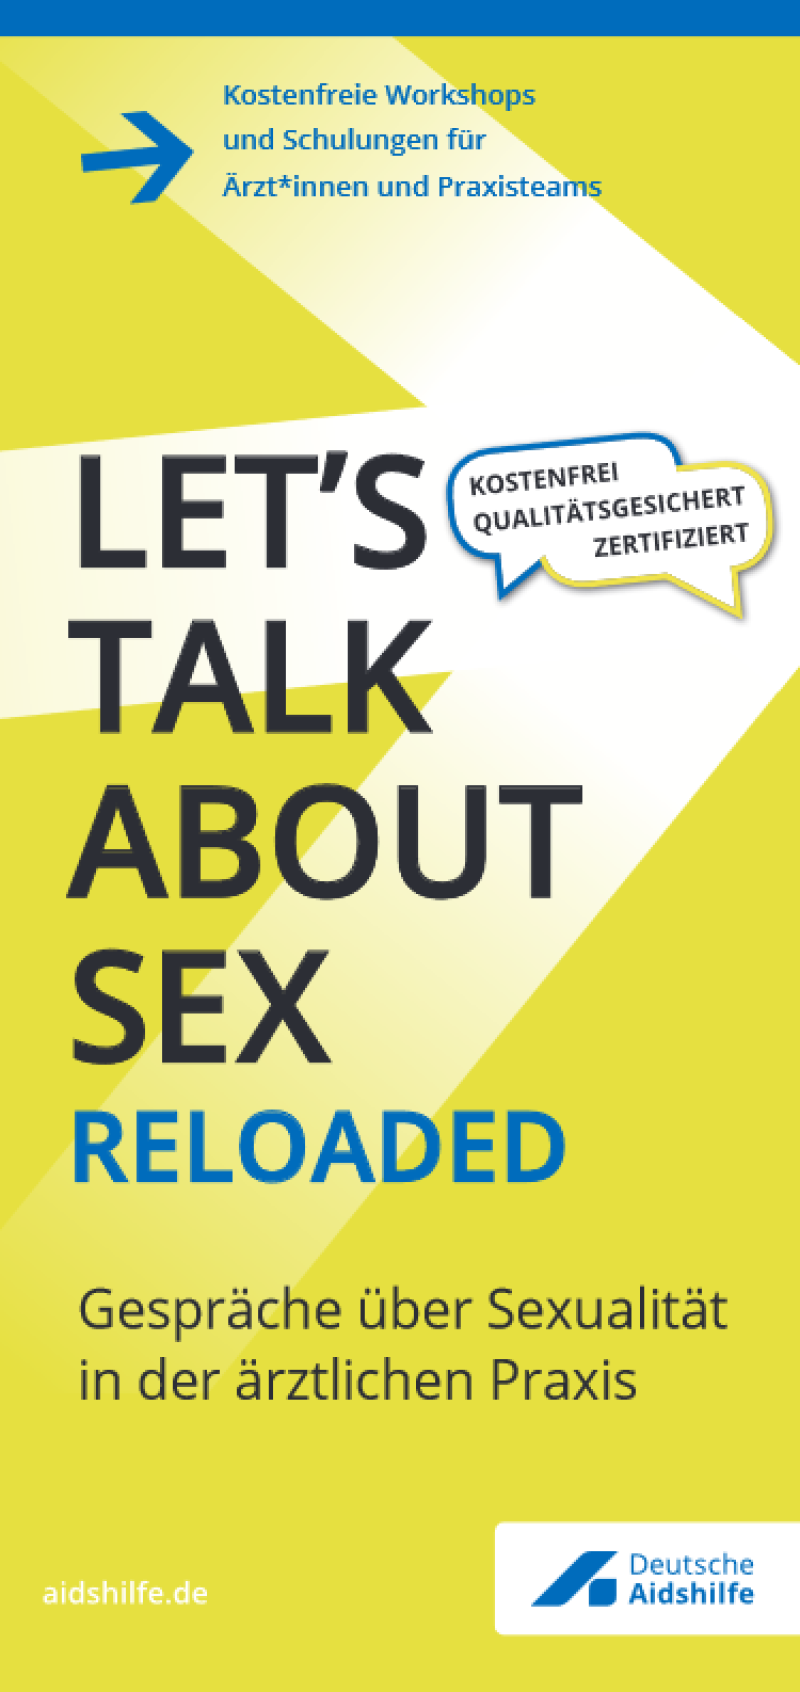 „Let’s talk about sex“ - HIV/STI-Prävention und Beratung in der ärztlichen Praxis